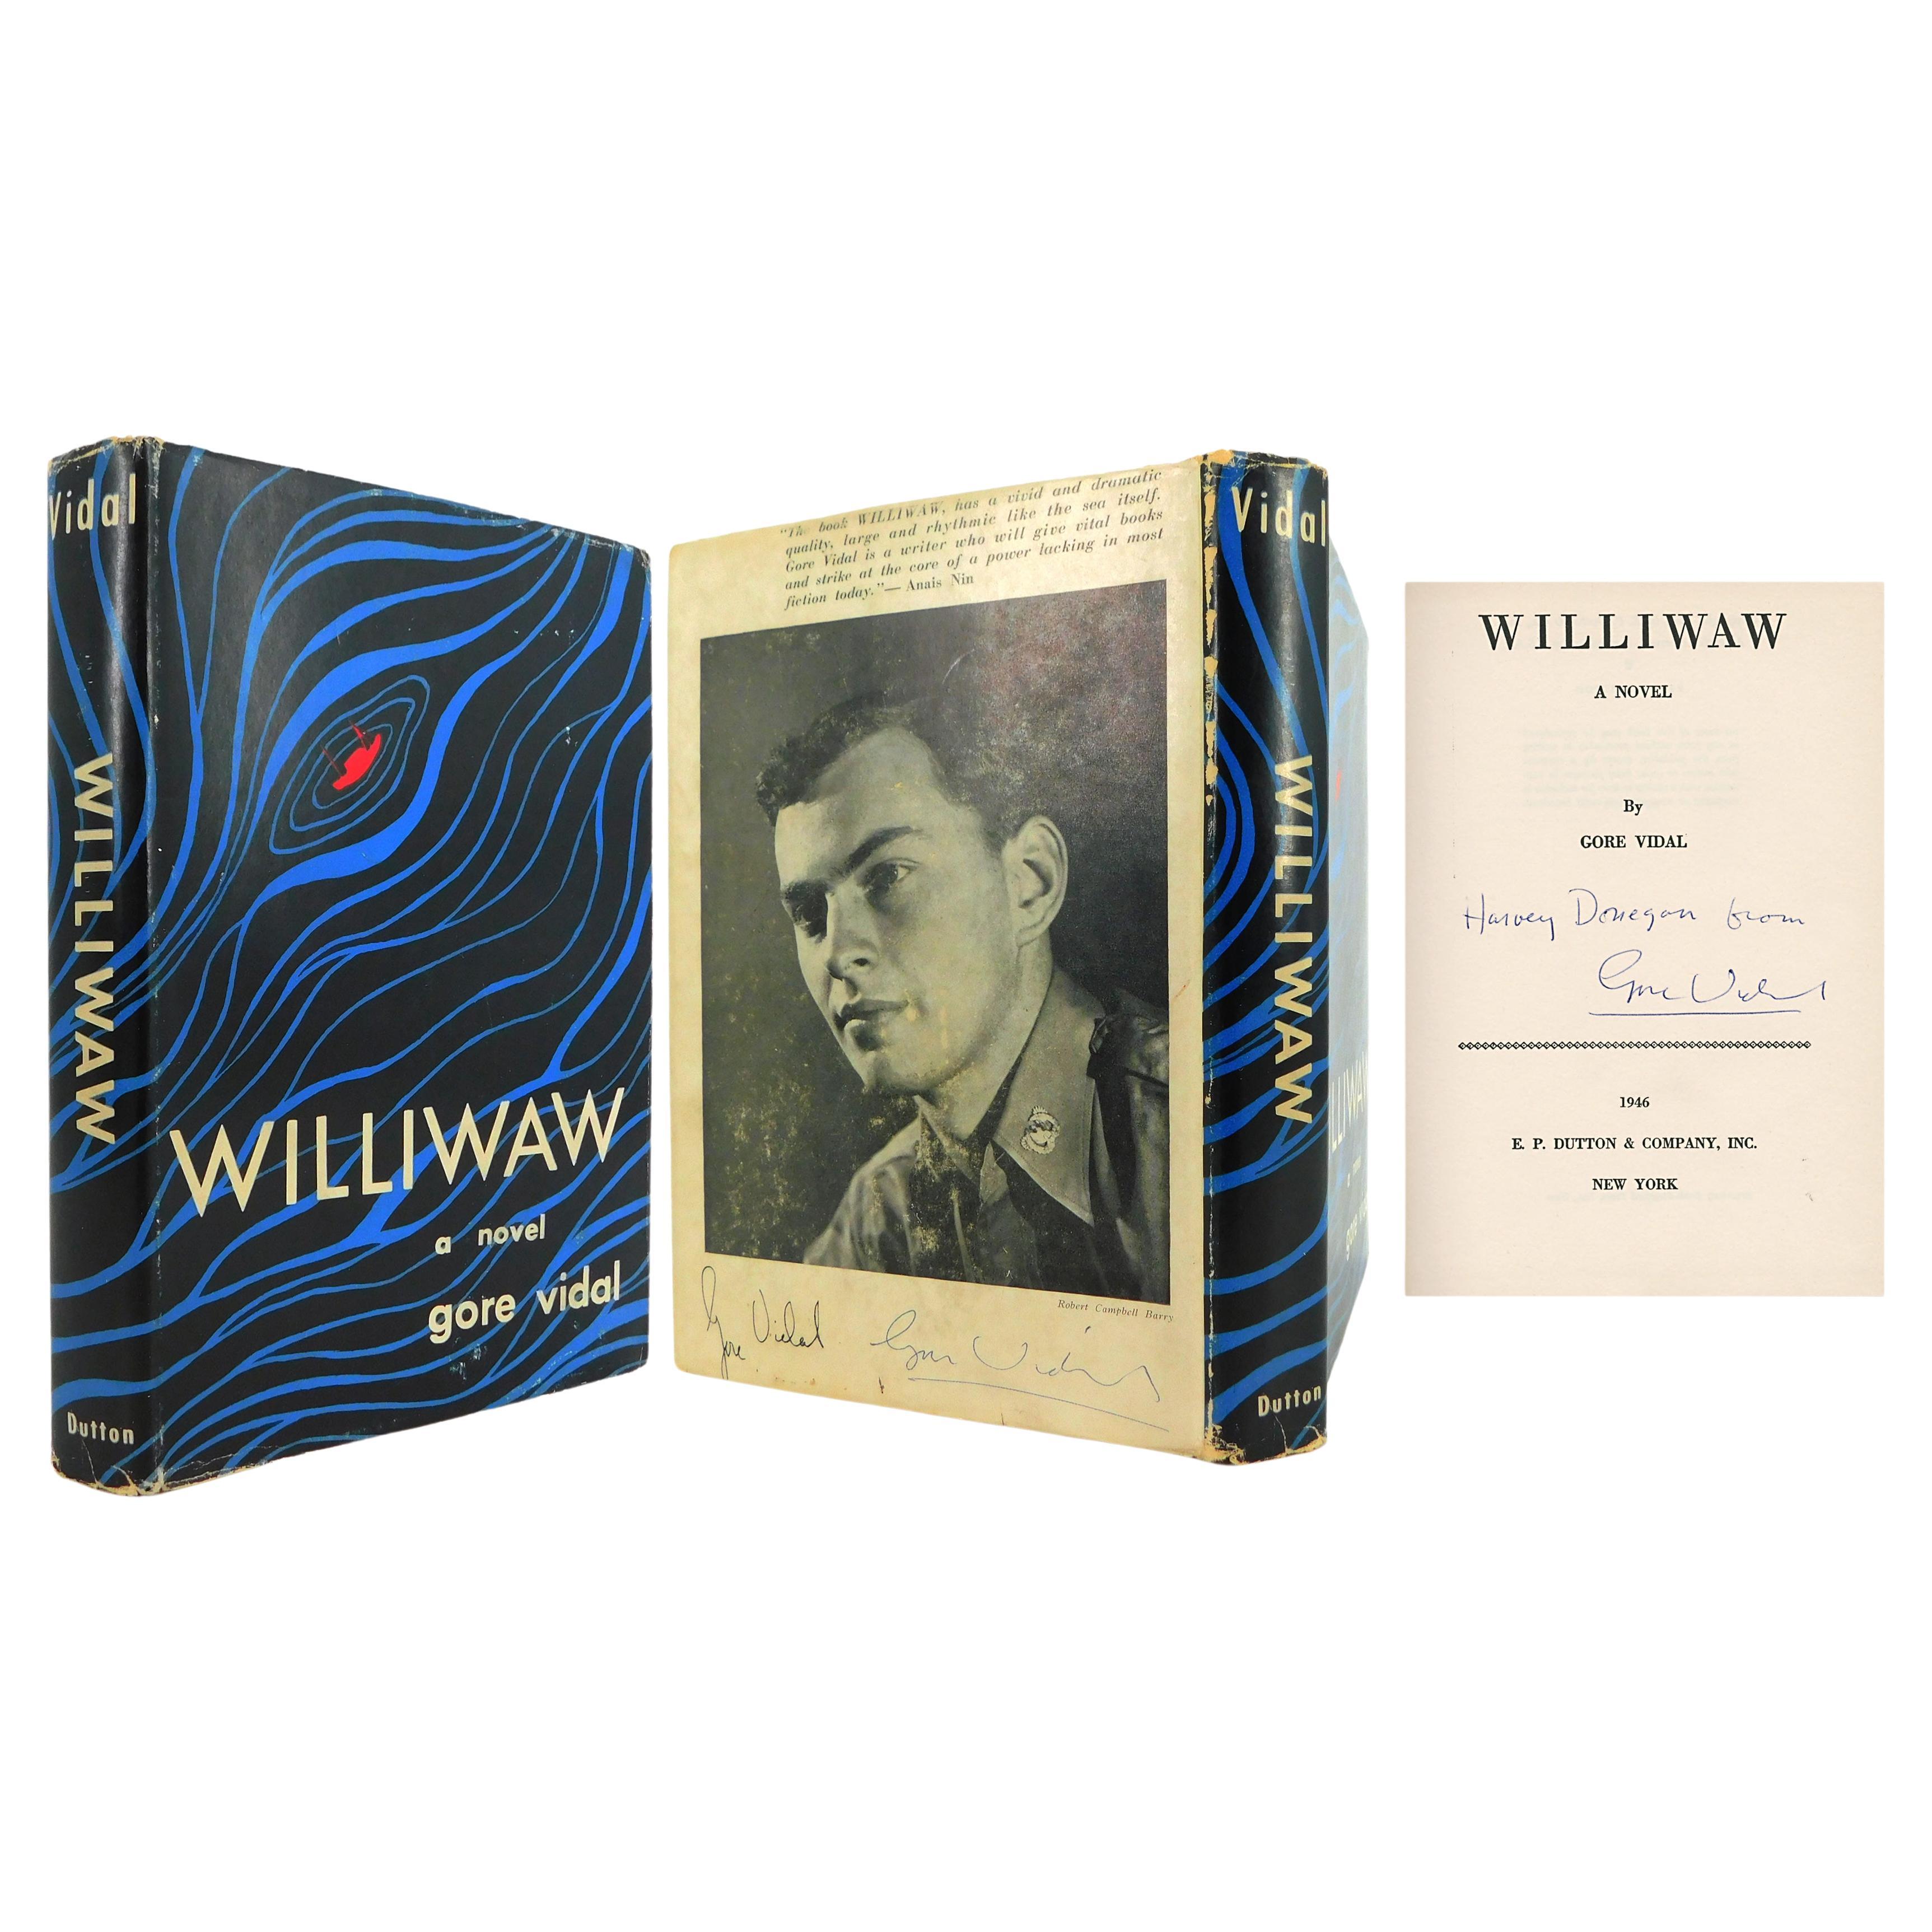 Le premier roman de GORE VIDAL « Williwaw », ÉDITION LA PLUS NUMÉROIRE